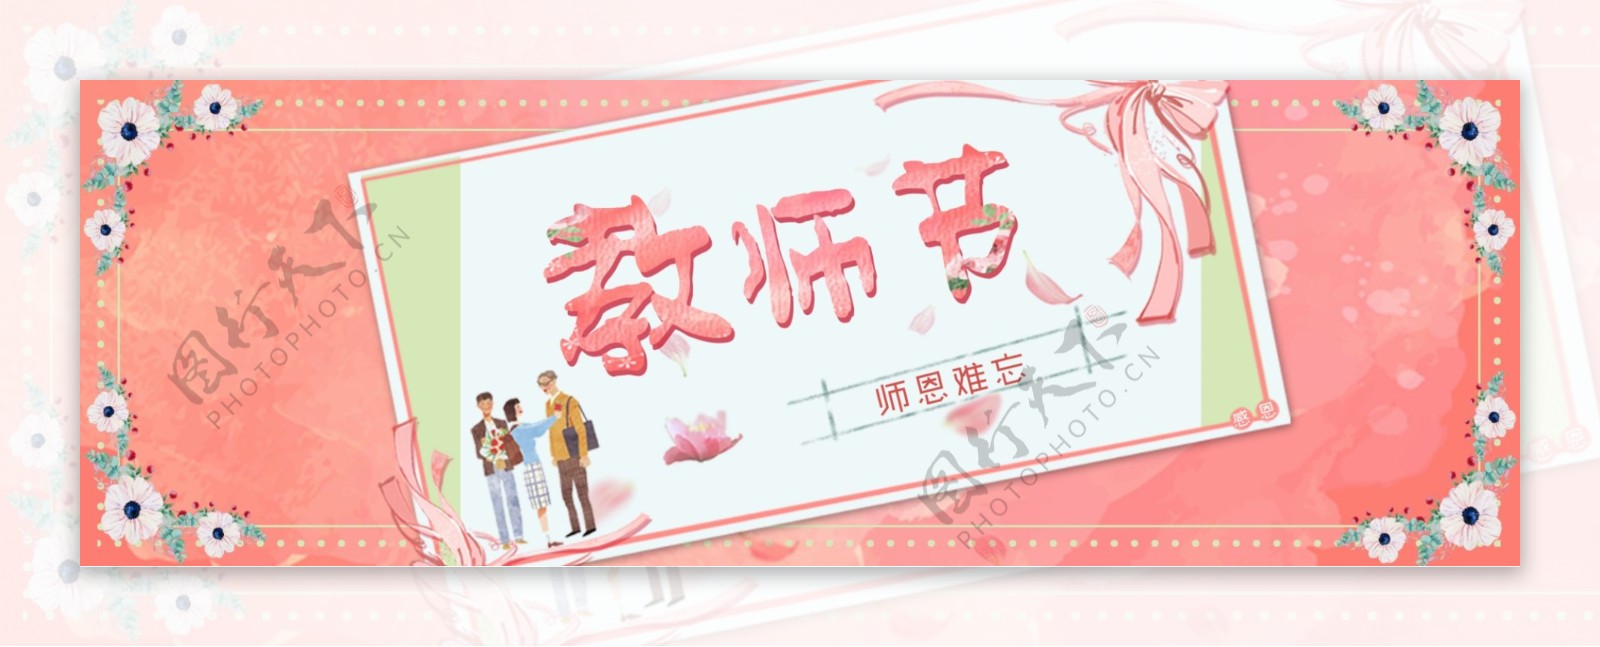 粉色水彩背景花朵边框教师节卡片海报banner